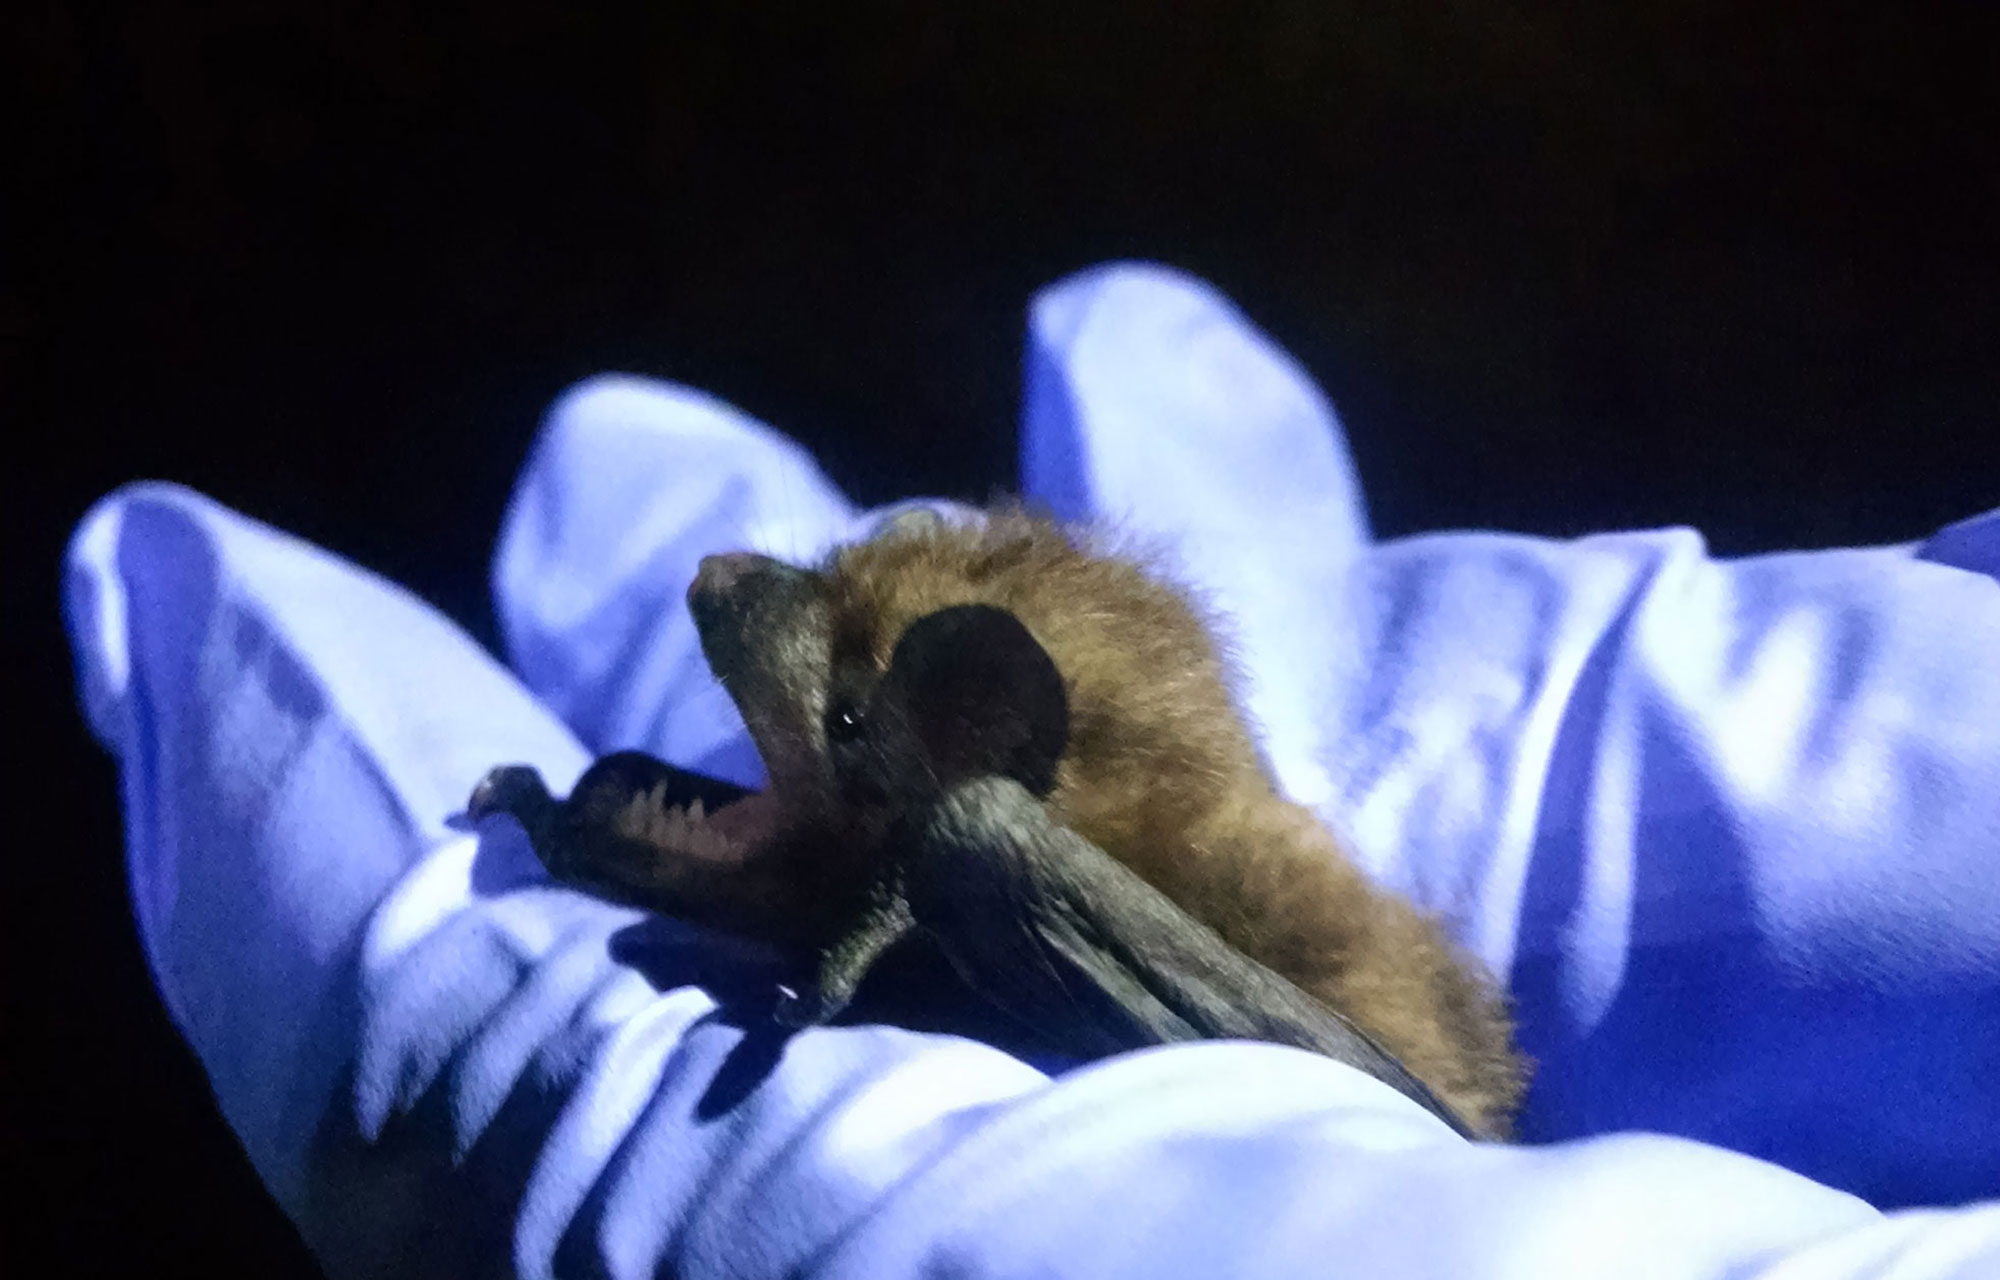 An evening bat.